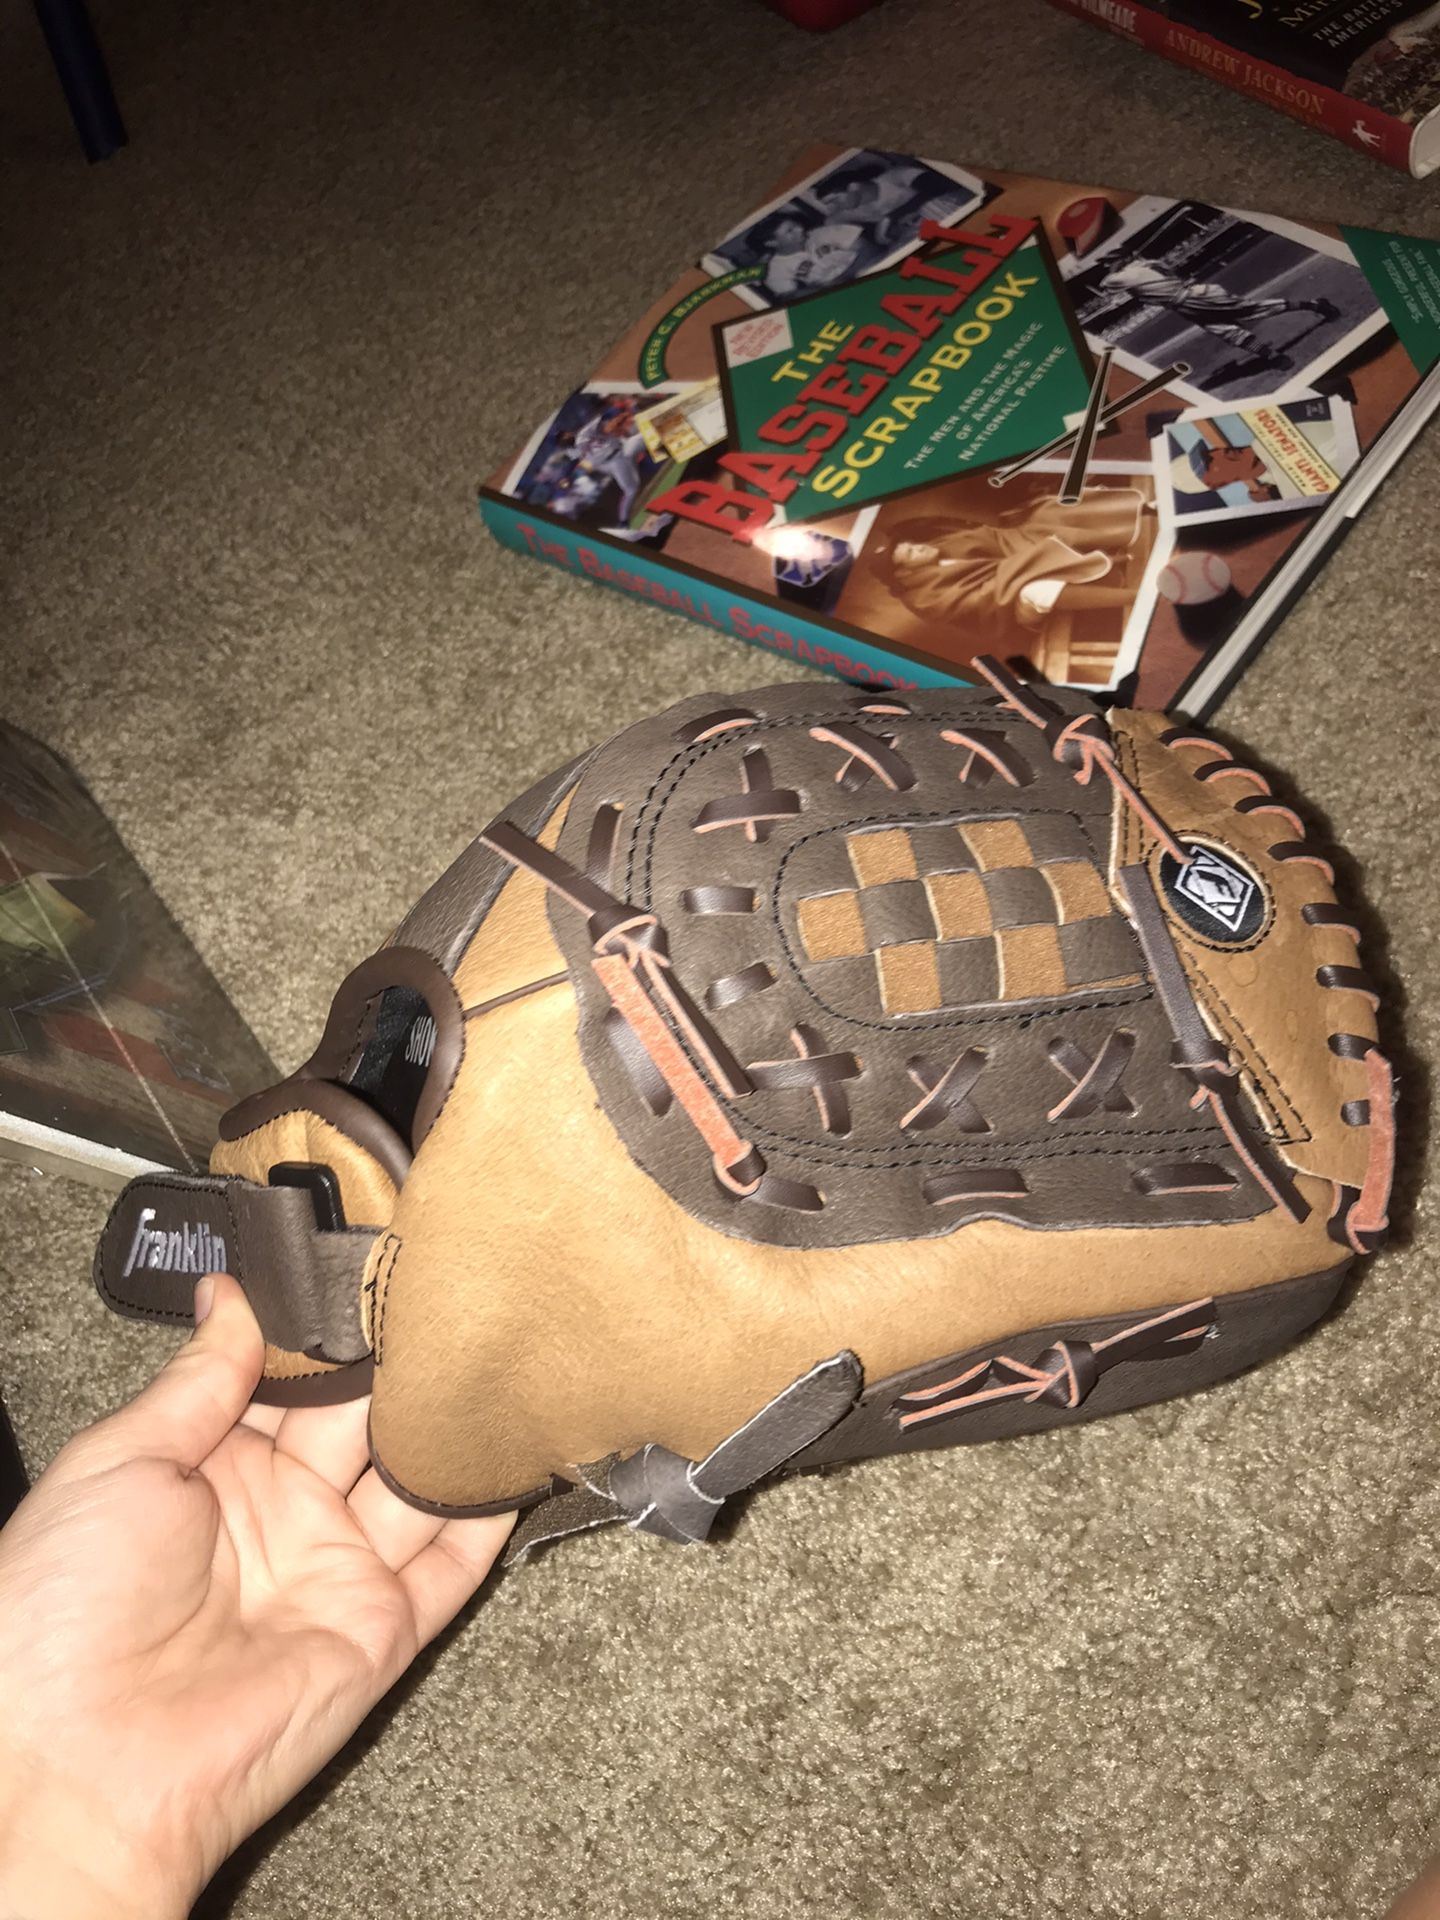 Franklin baseball glove